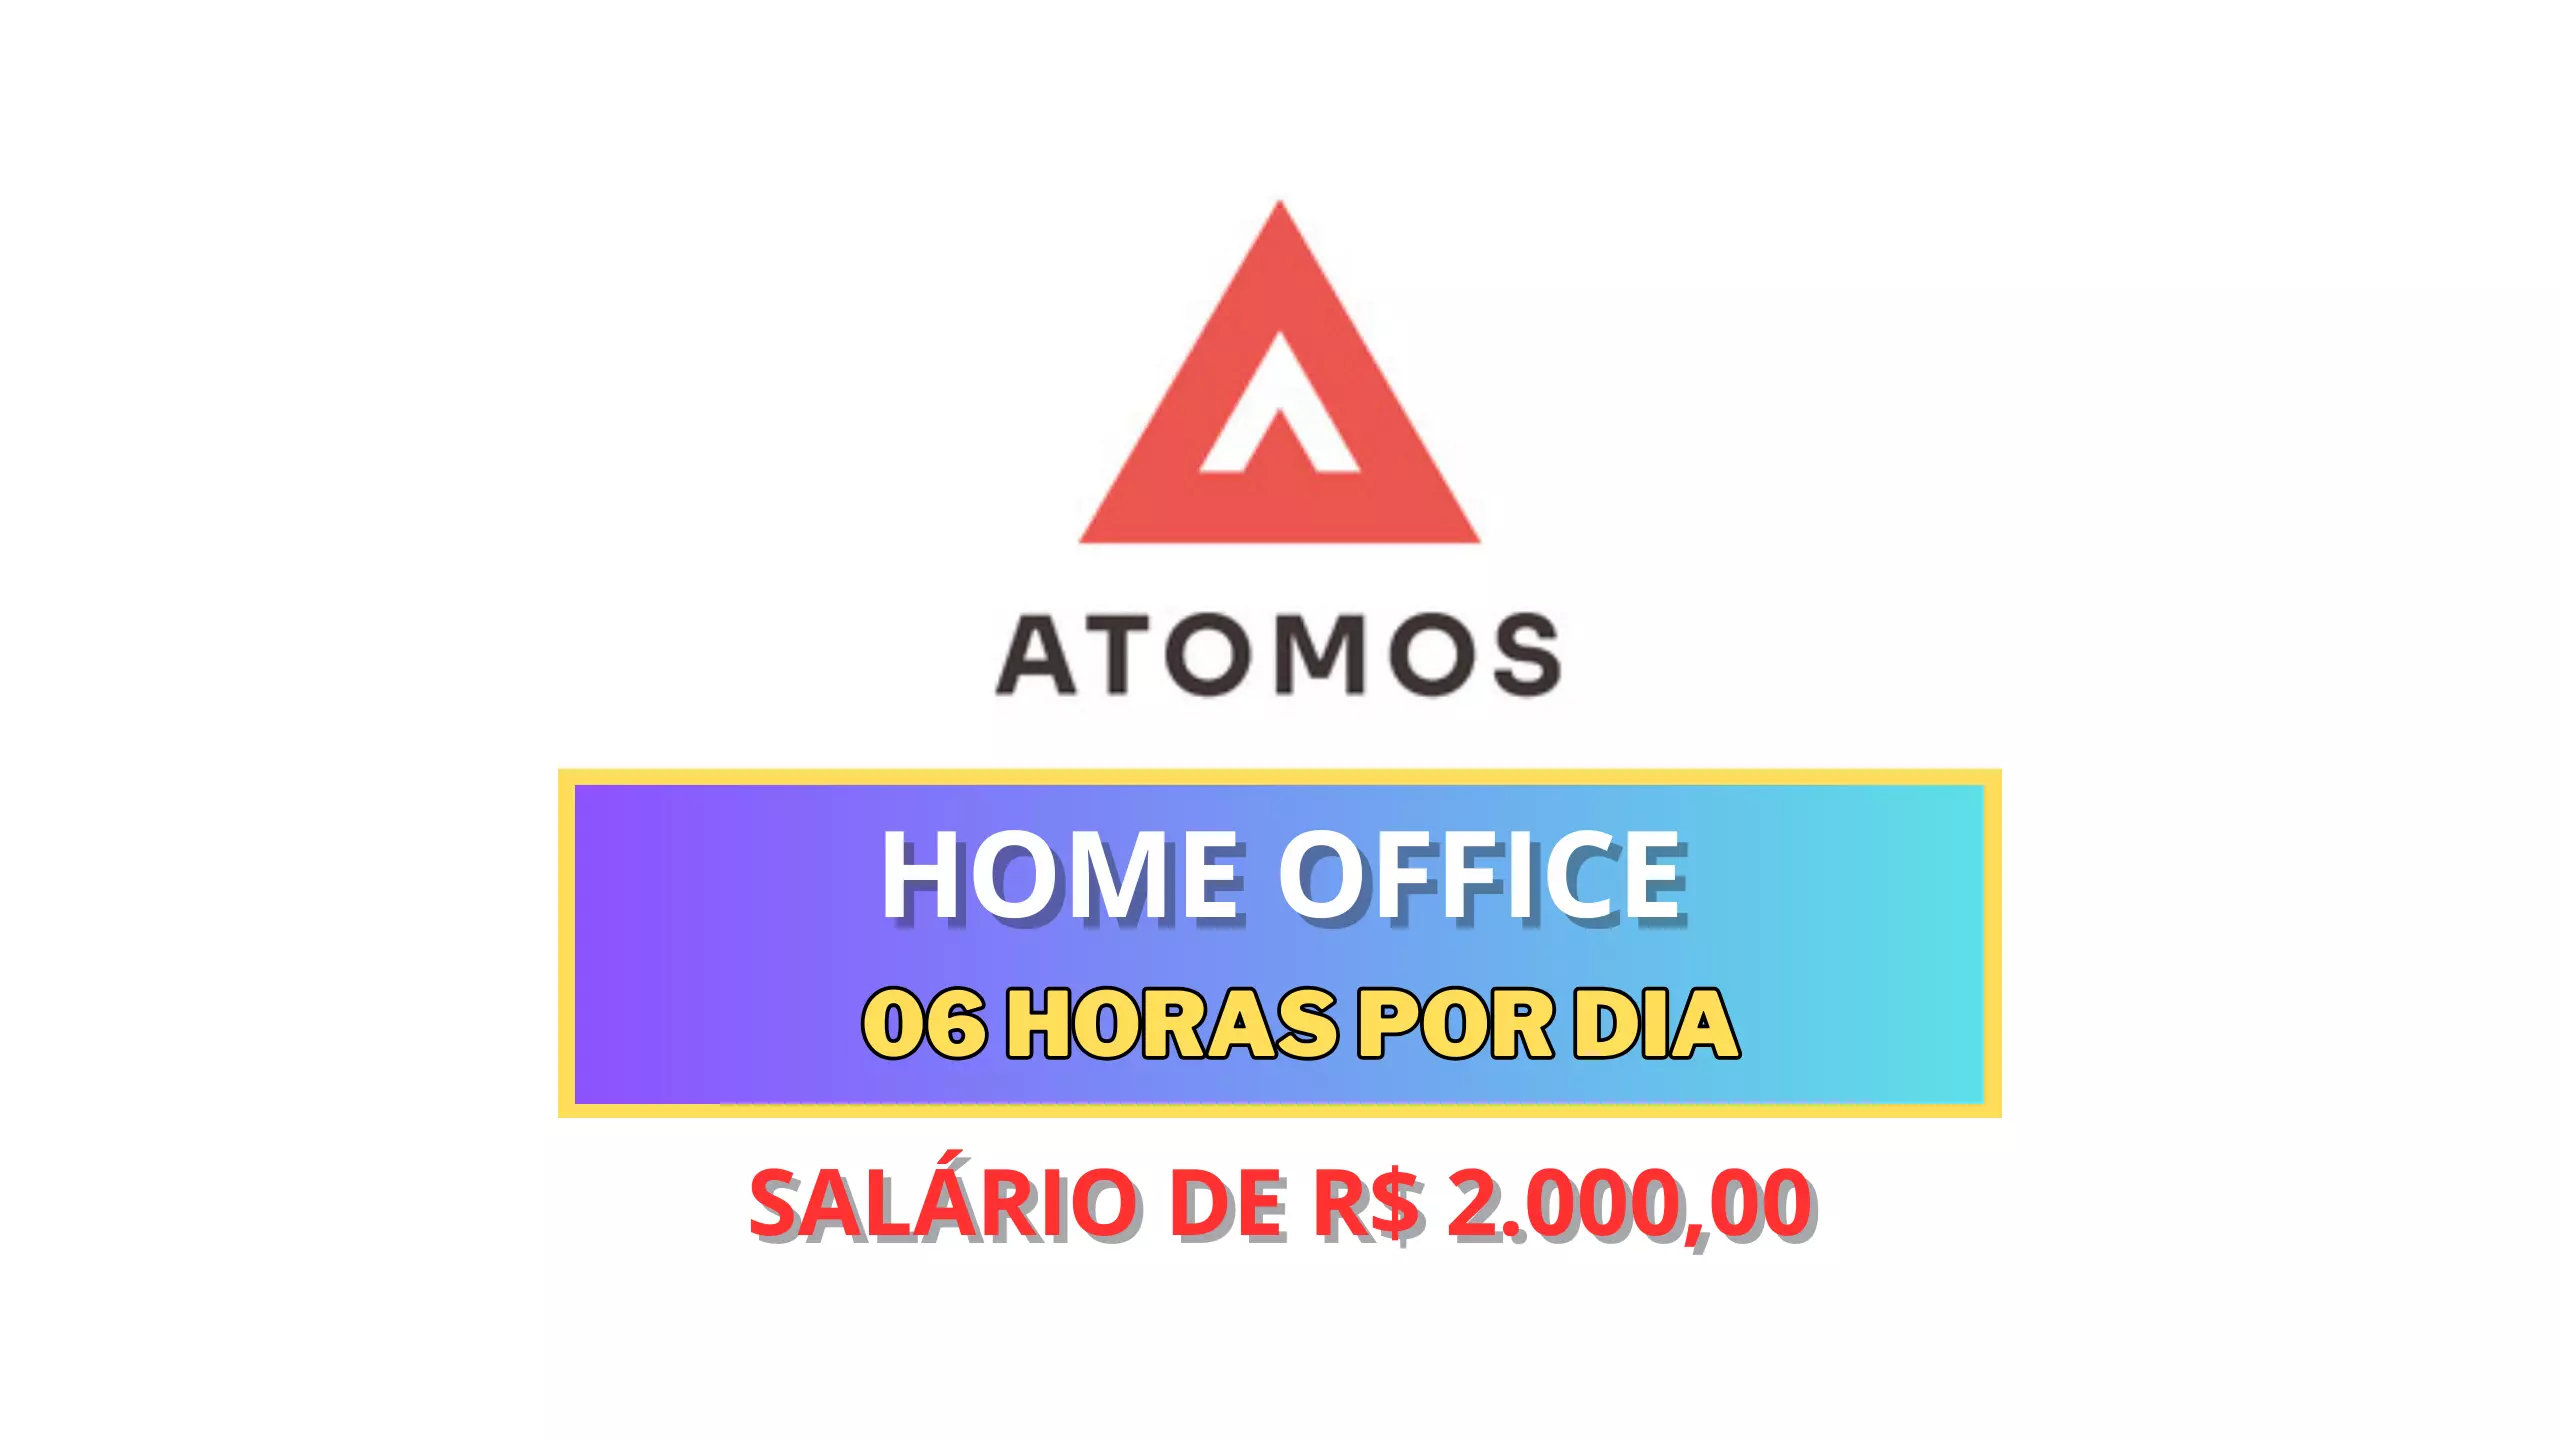 Atomos Brasil abre vaga 100% HOME OFFICE 06 horas por dia com Atendimento ao Cliente e salário de R$ 2.000,00